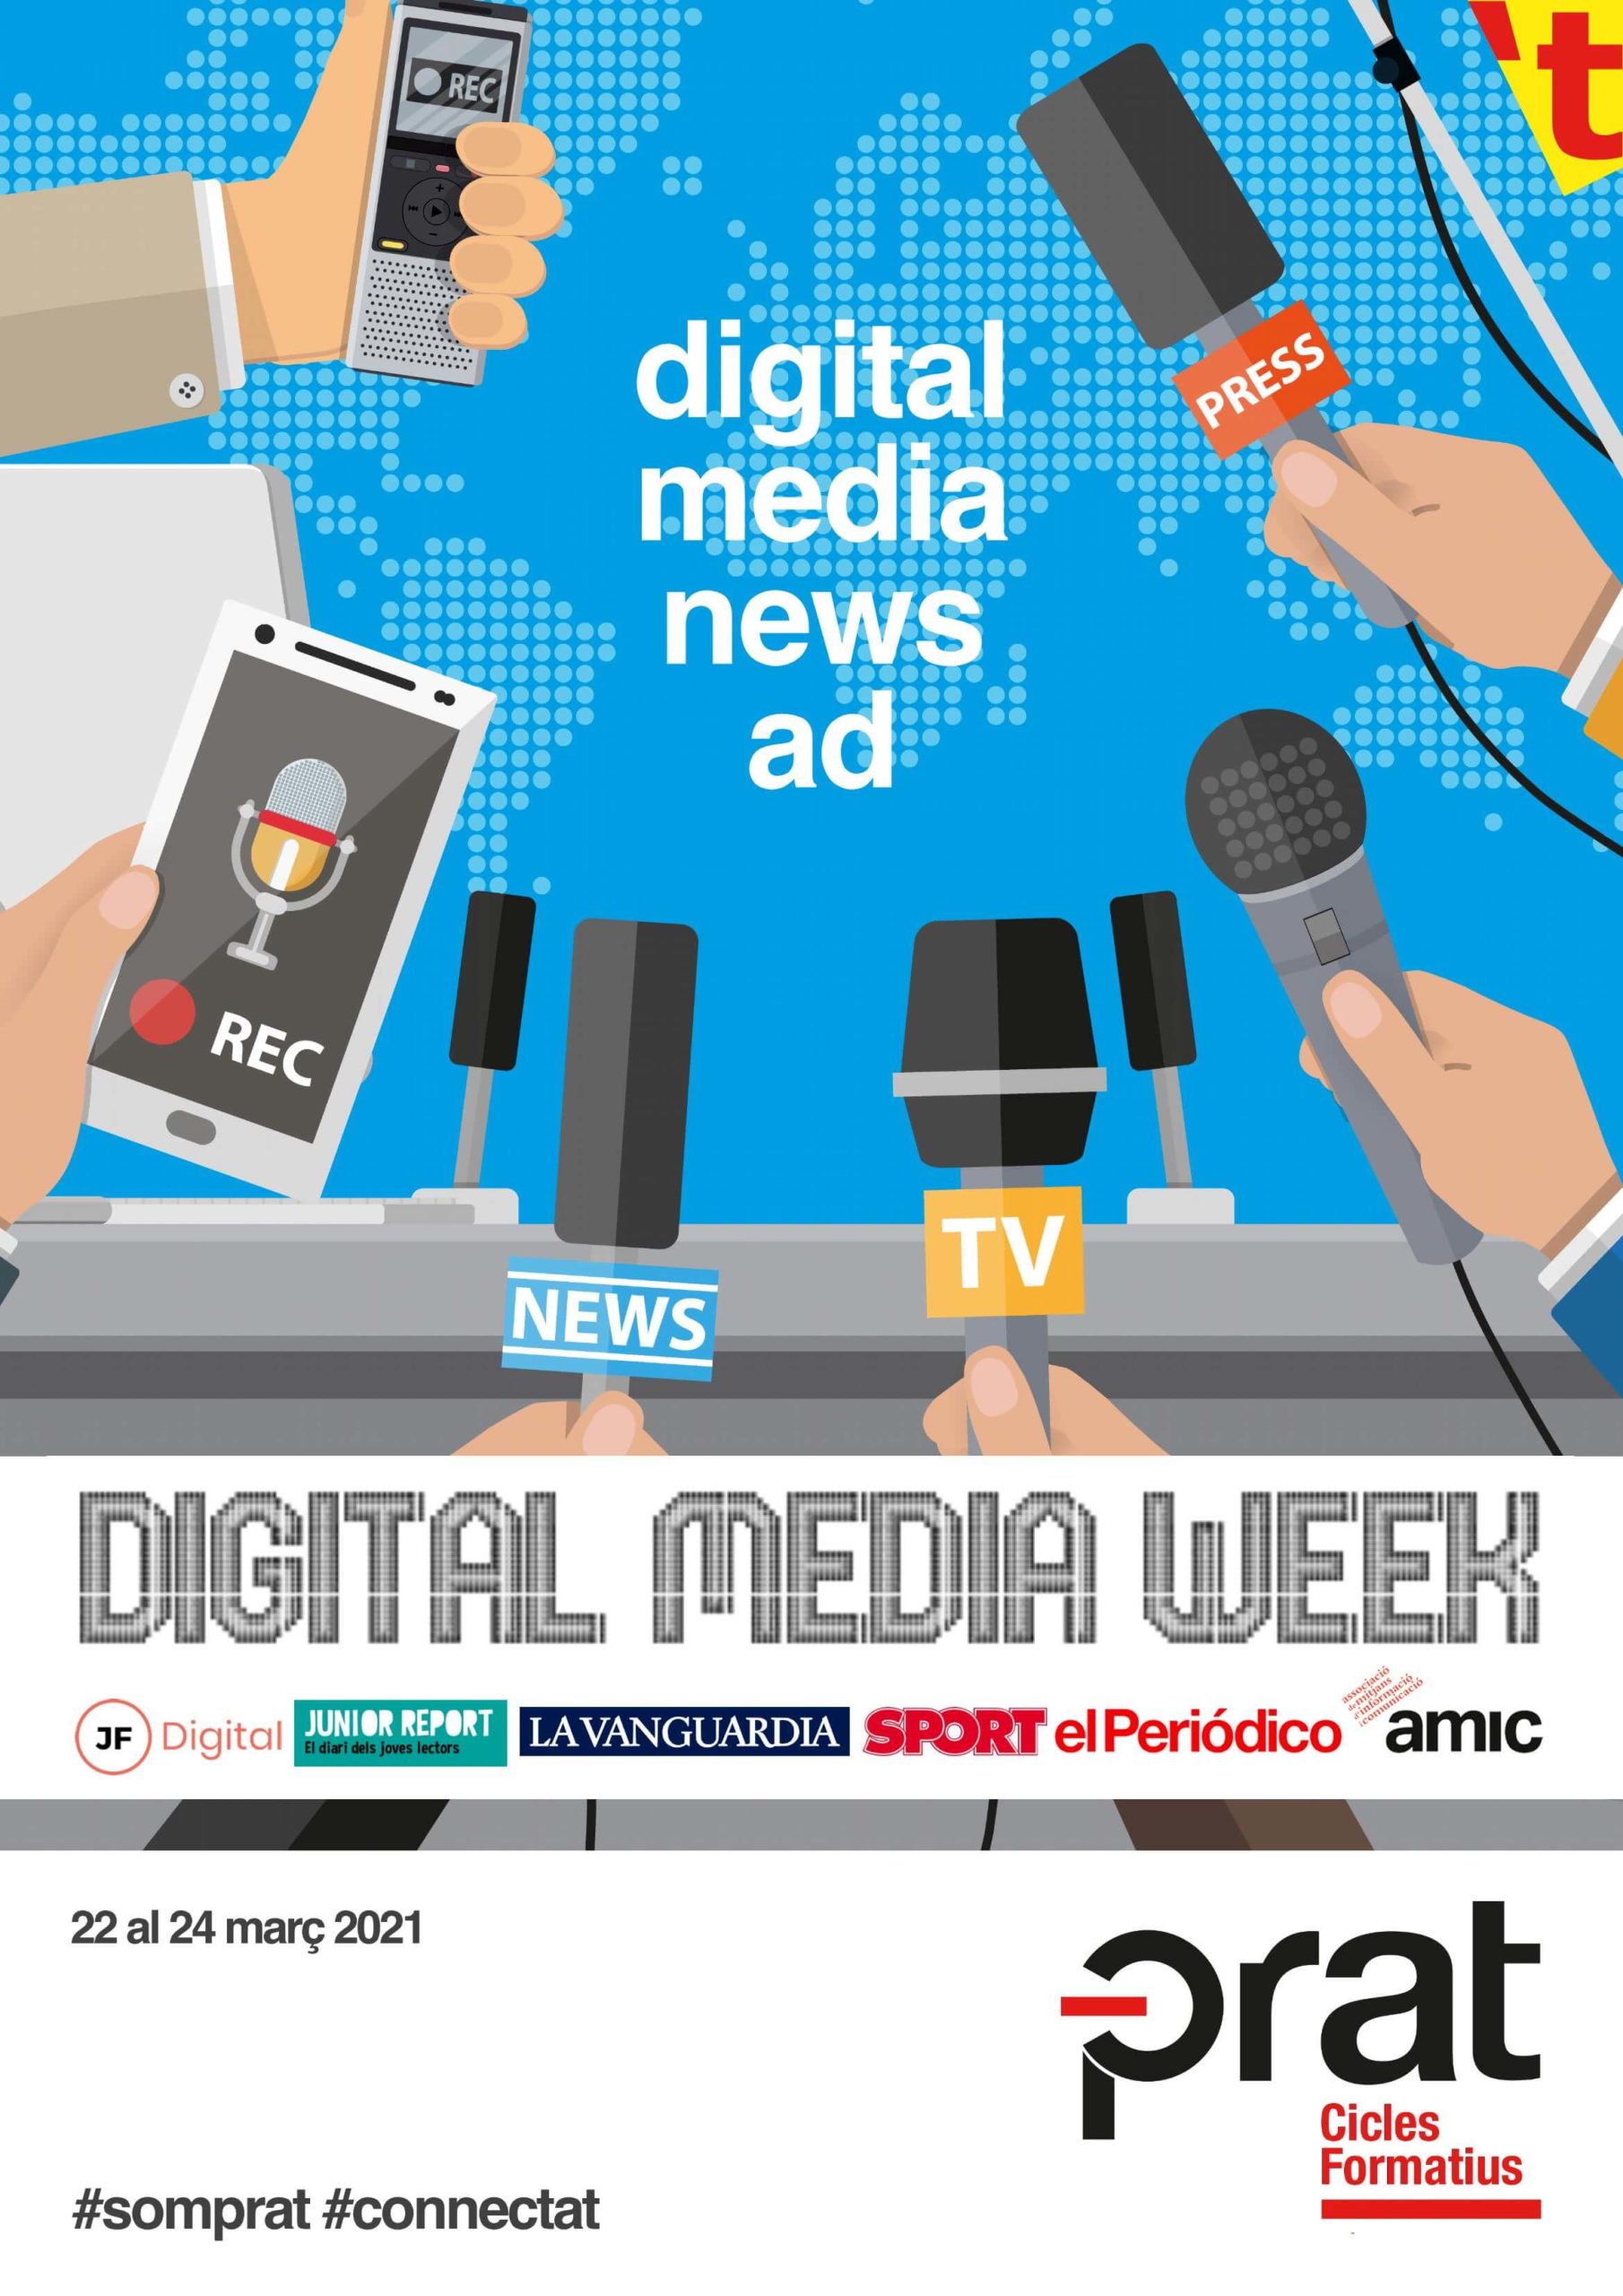 Digital Media Week - Cicle Formatiu de Grau Superior de Màrqueting i Publicitat a Prat Educació